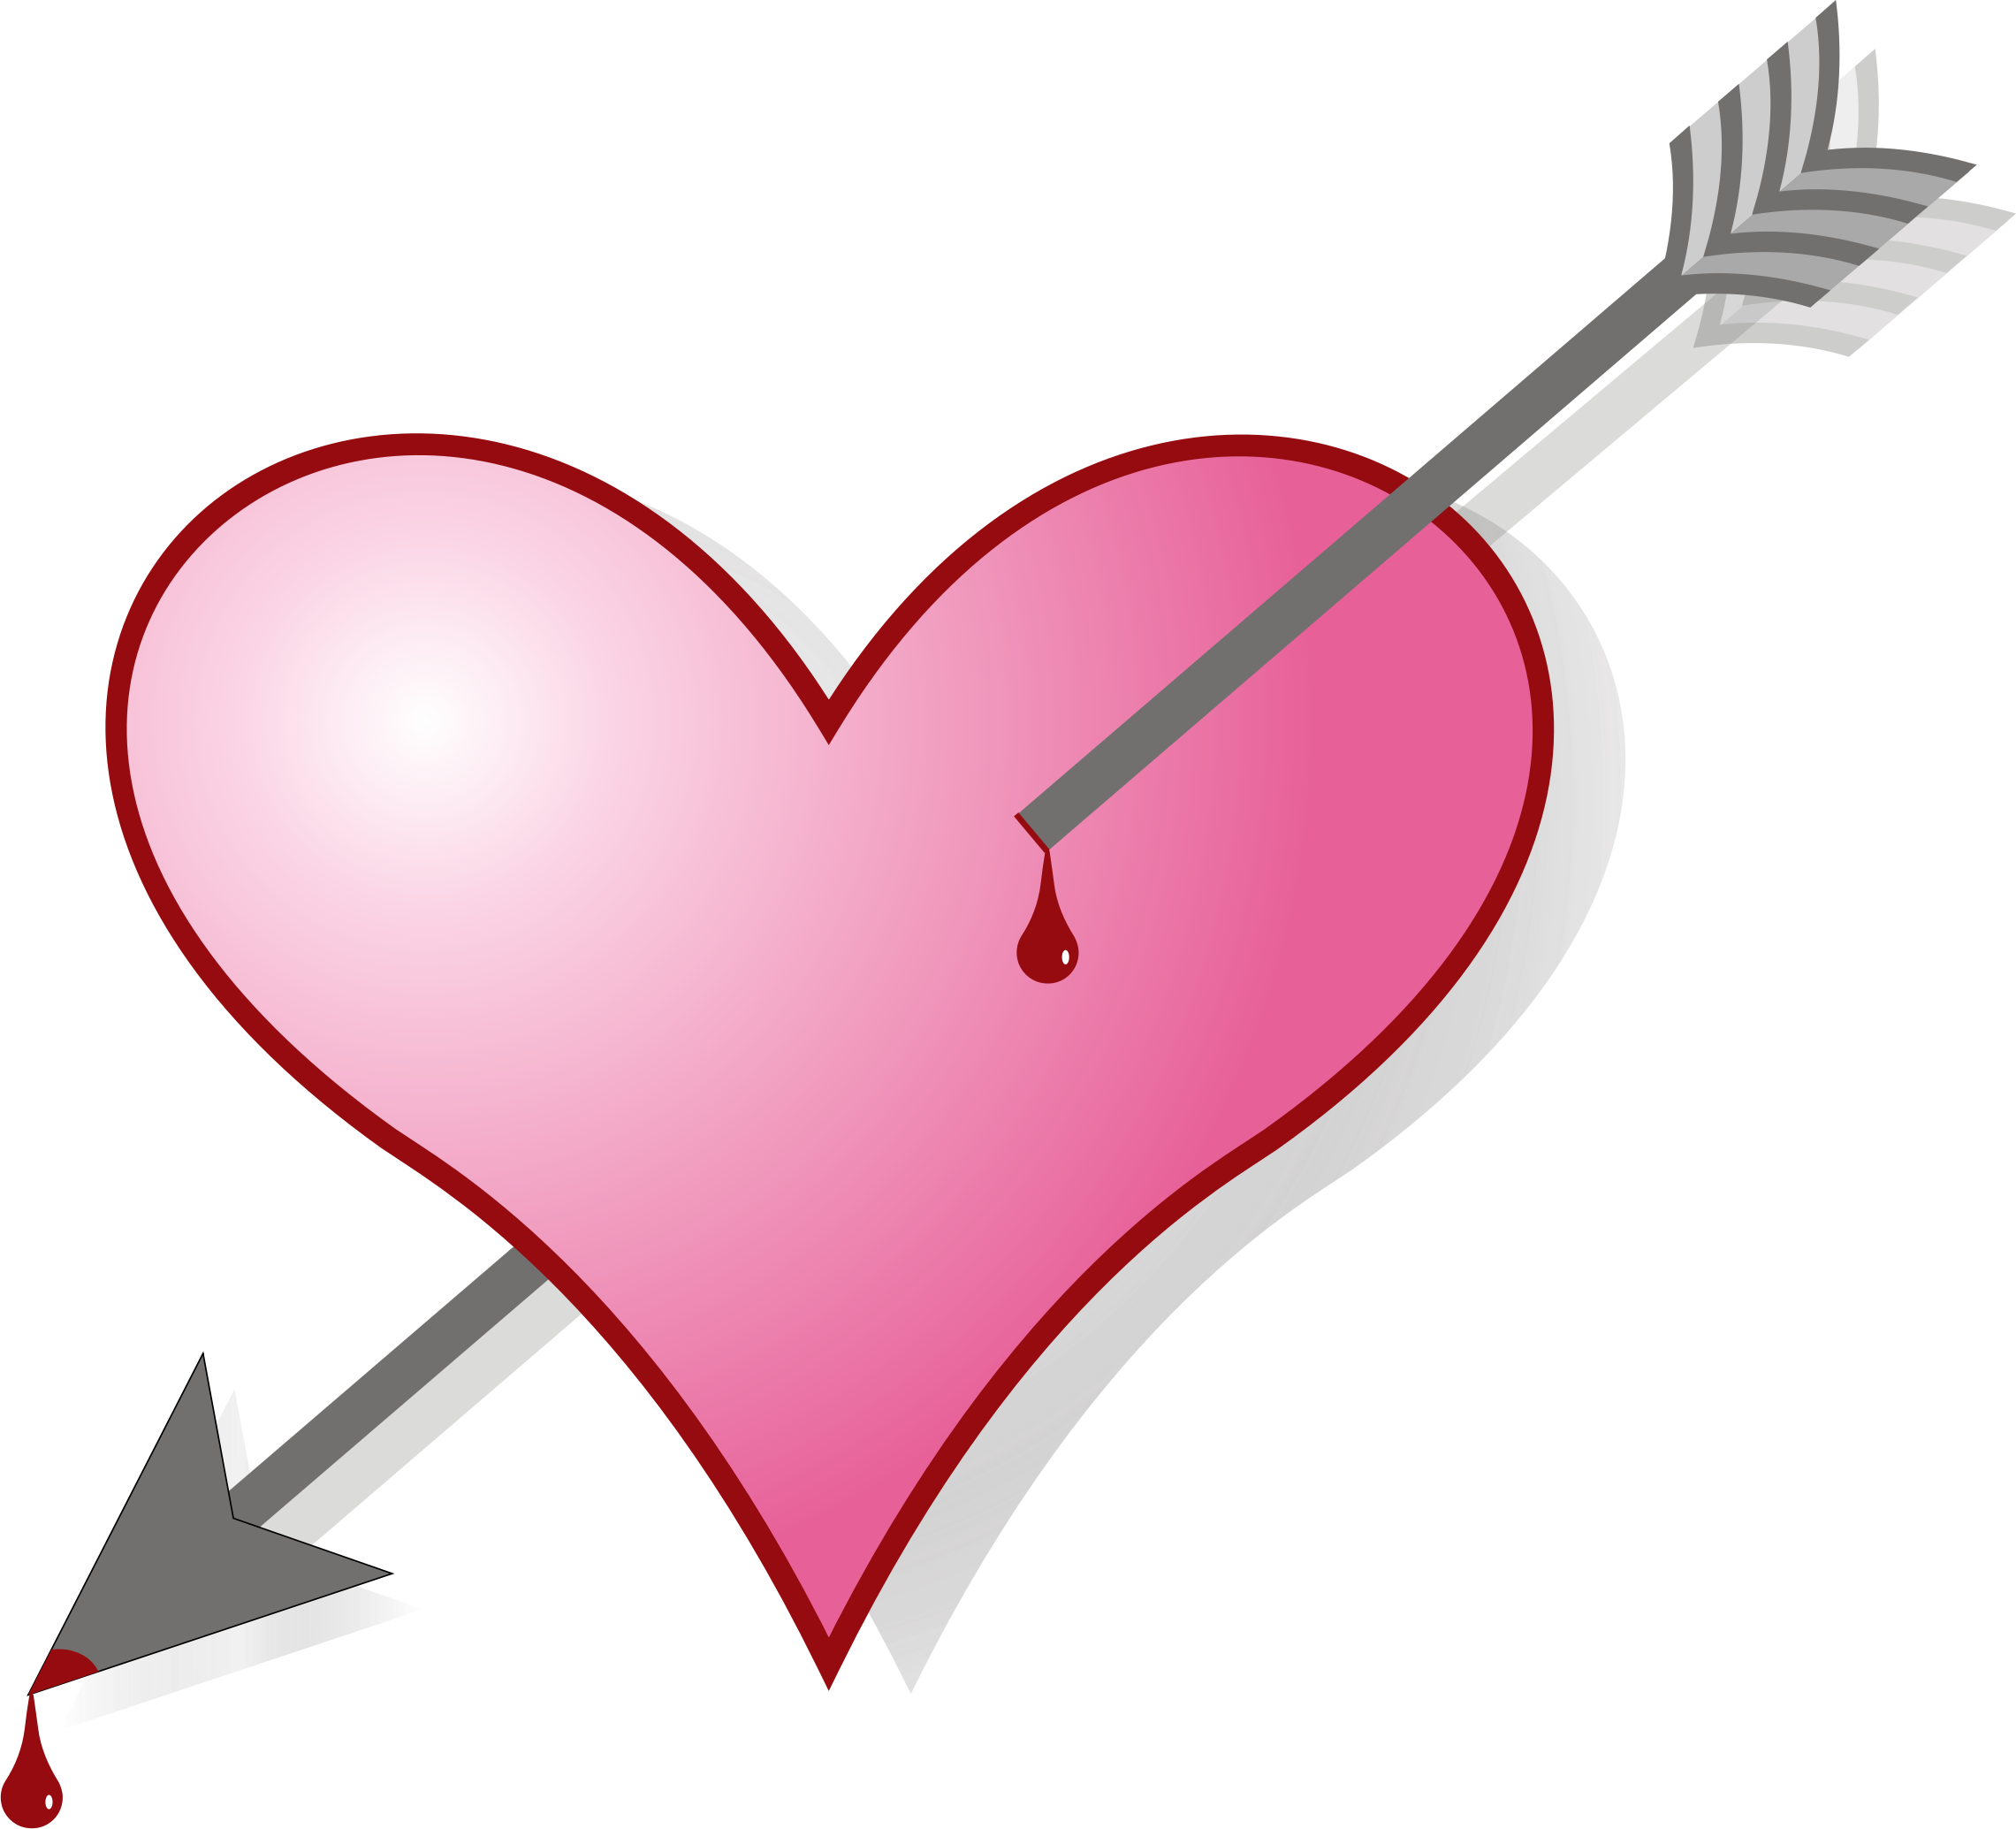 arrow clipart heart - photo #1